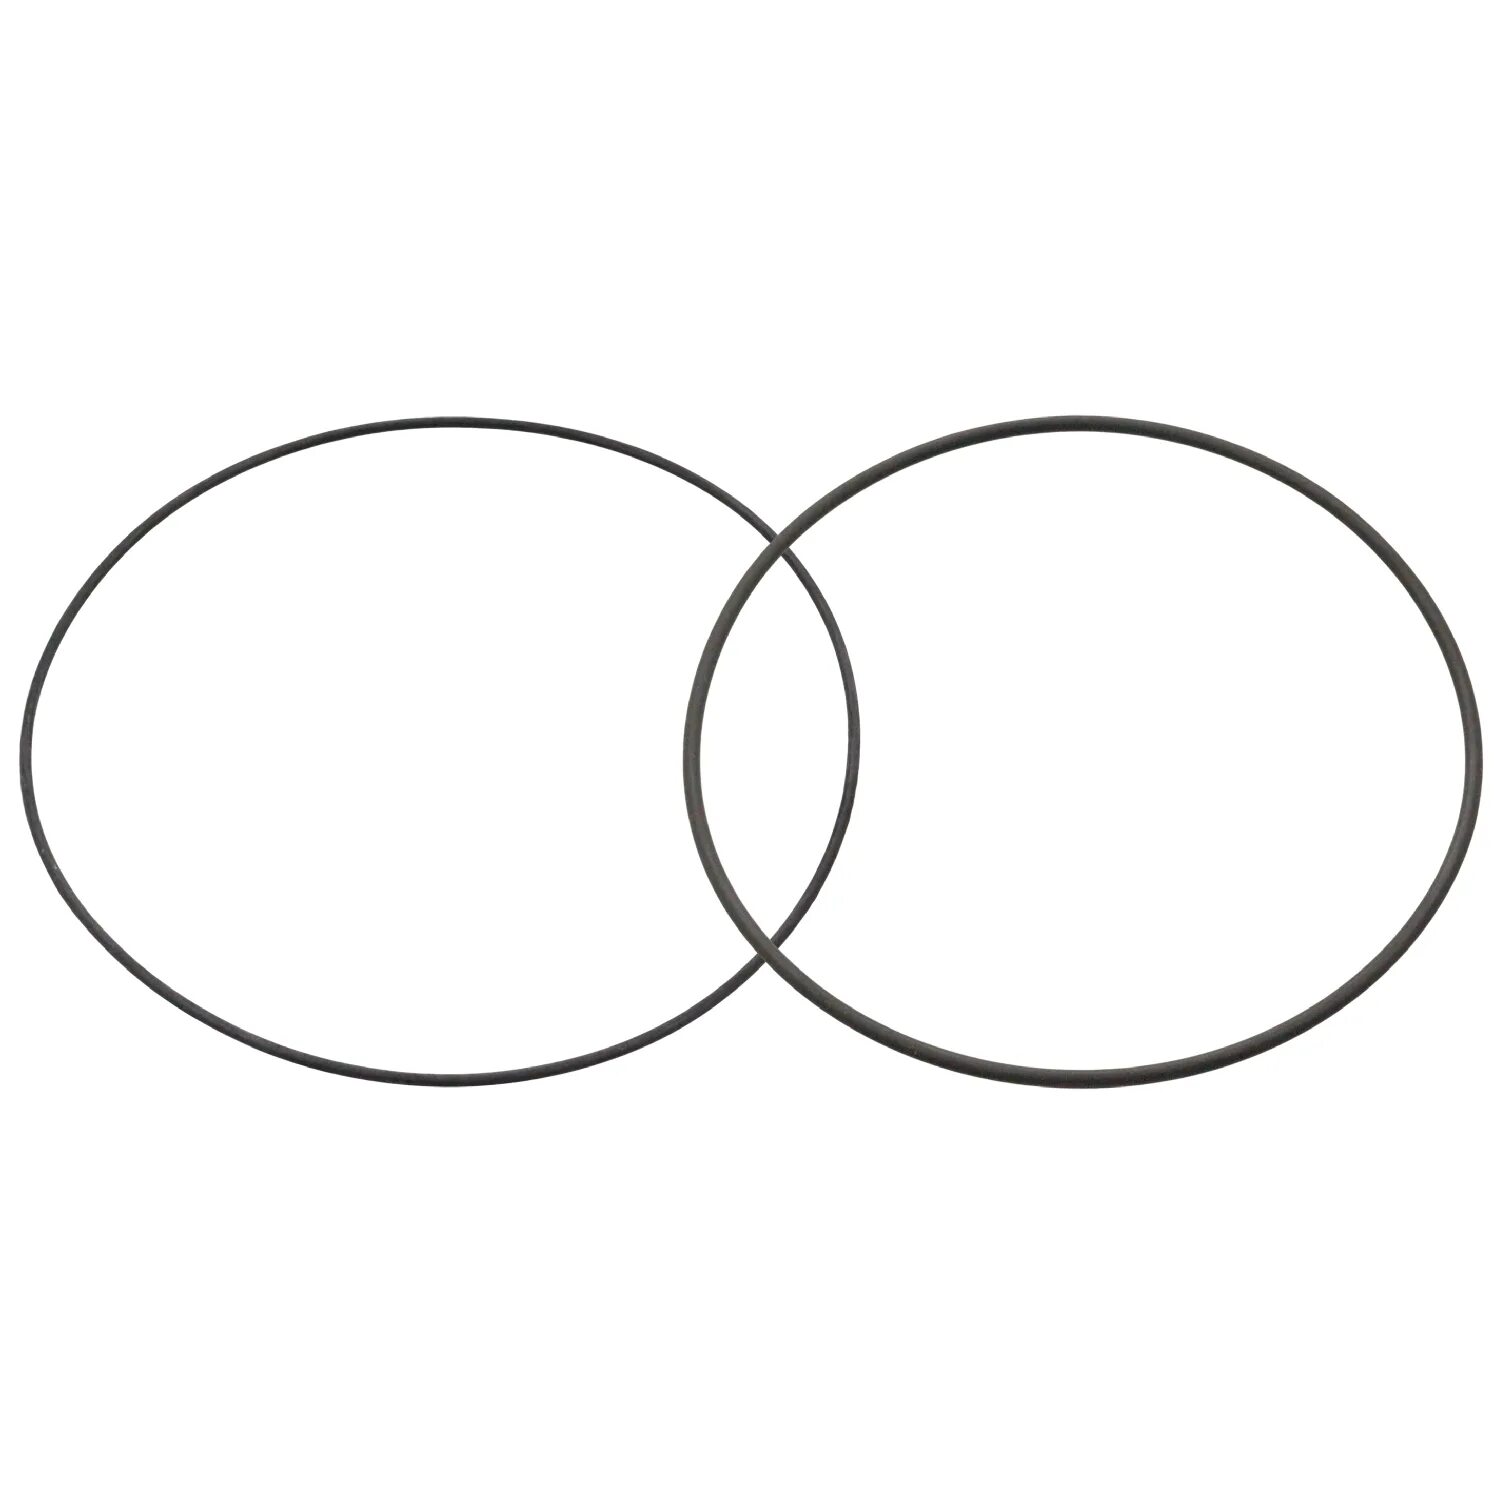 Знак маленького круга. Две пересекающиеся окружности. Два пересекающихся круга. Два пересекающихся круга символ. Пересечение кругов.